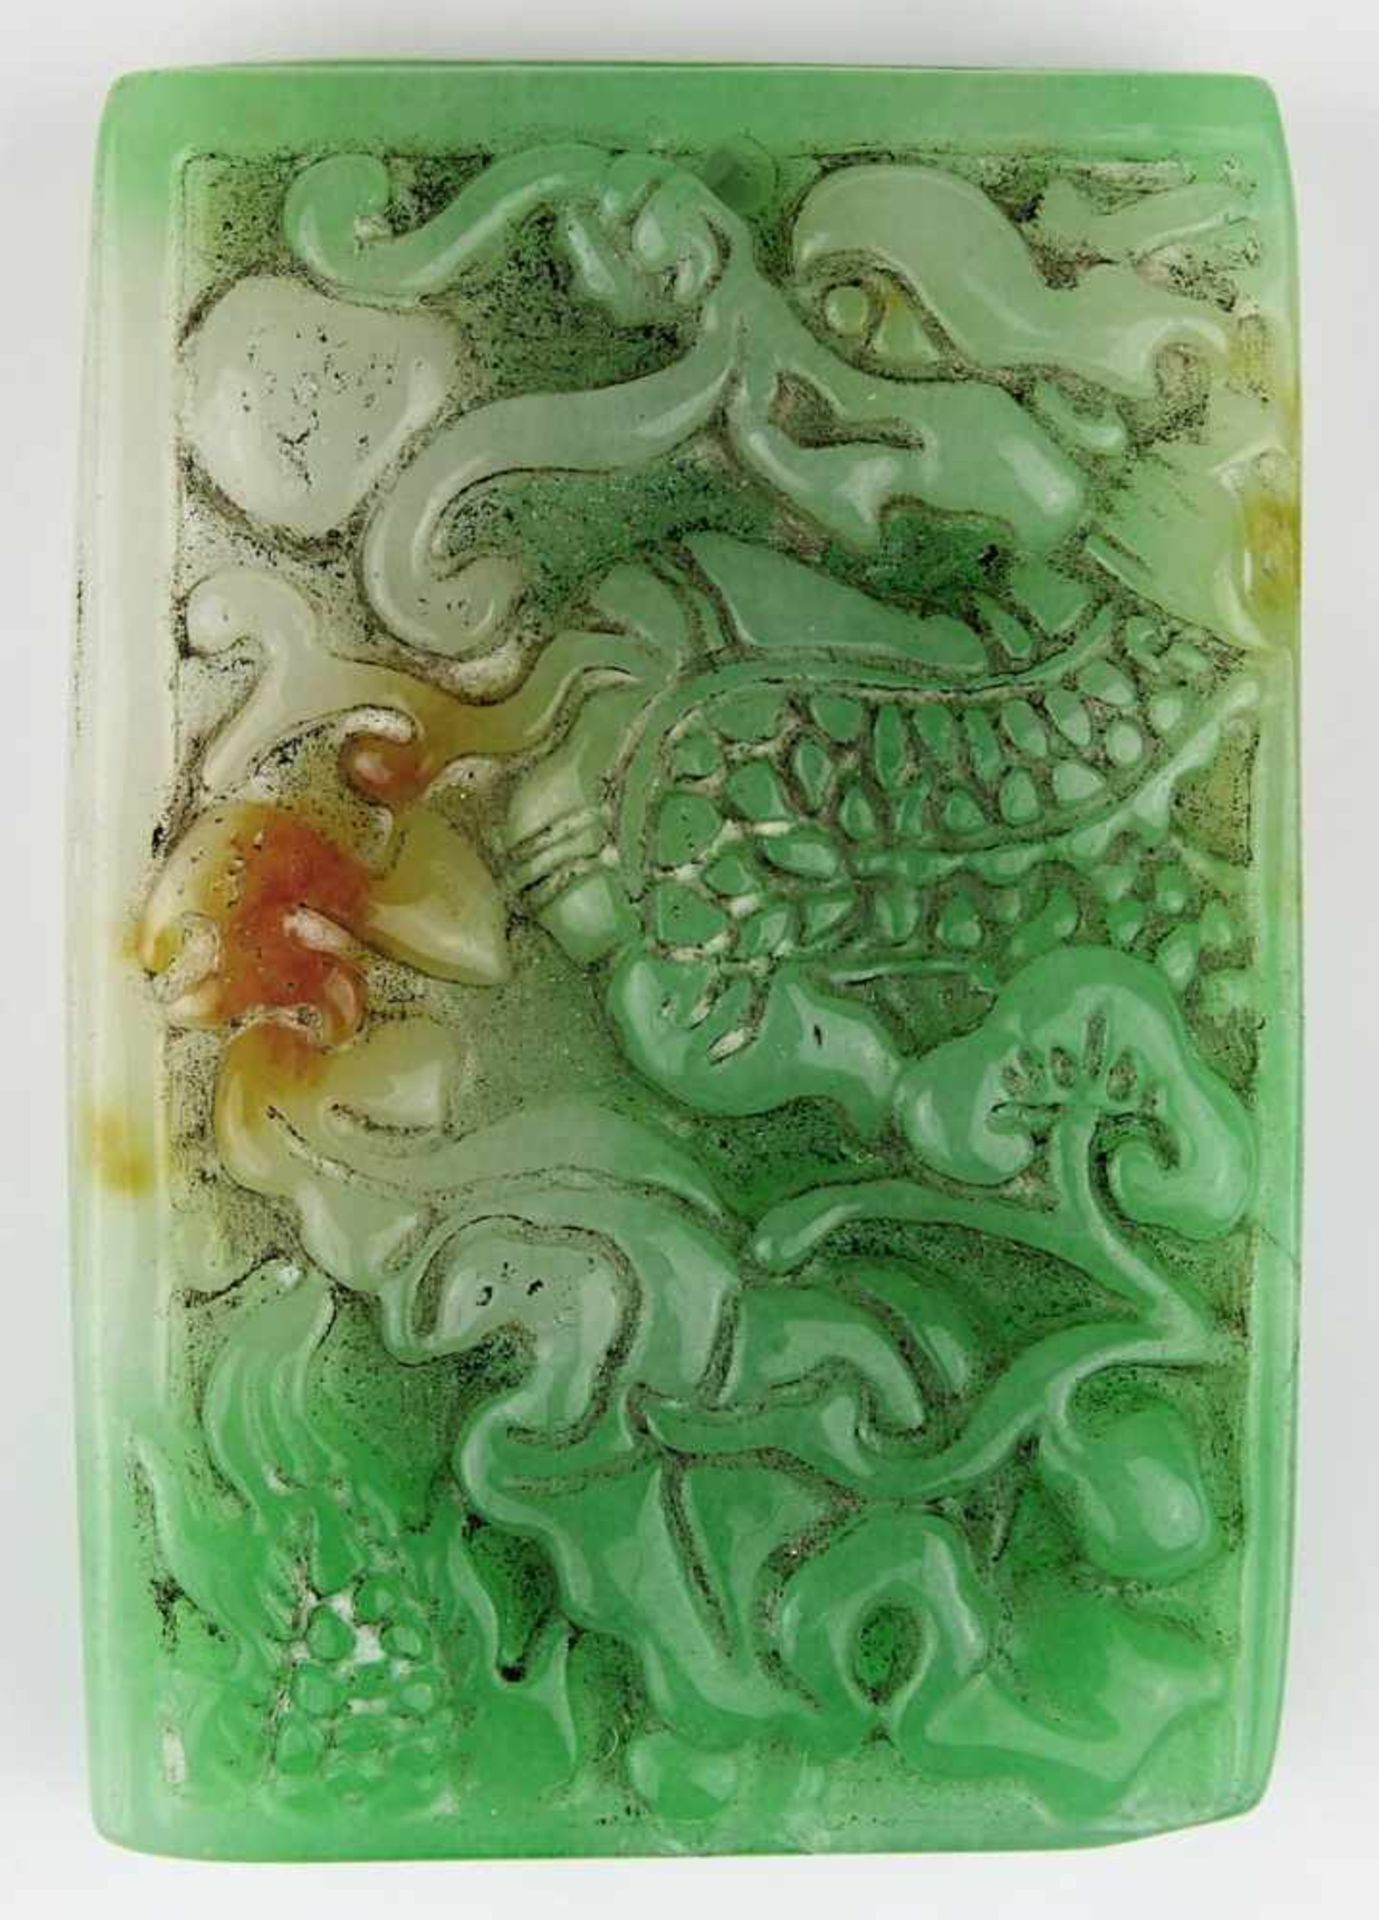 Jadeanhänger mit Drachenmotiv, China um 1950, rechteckiger grünbrauner Jadestein, mit im Relief